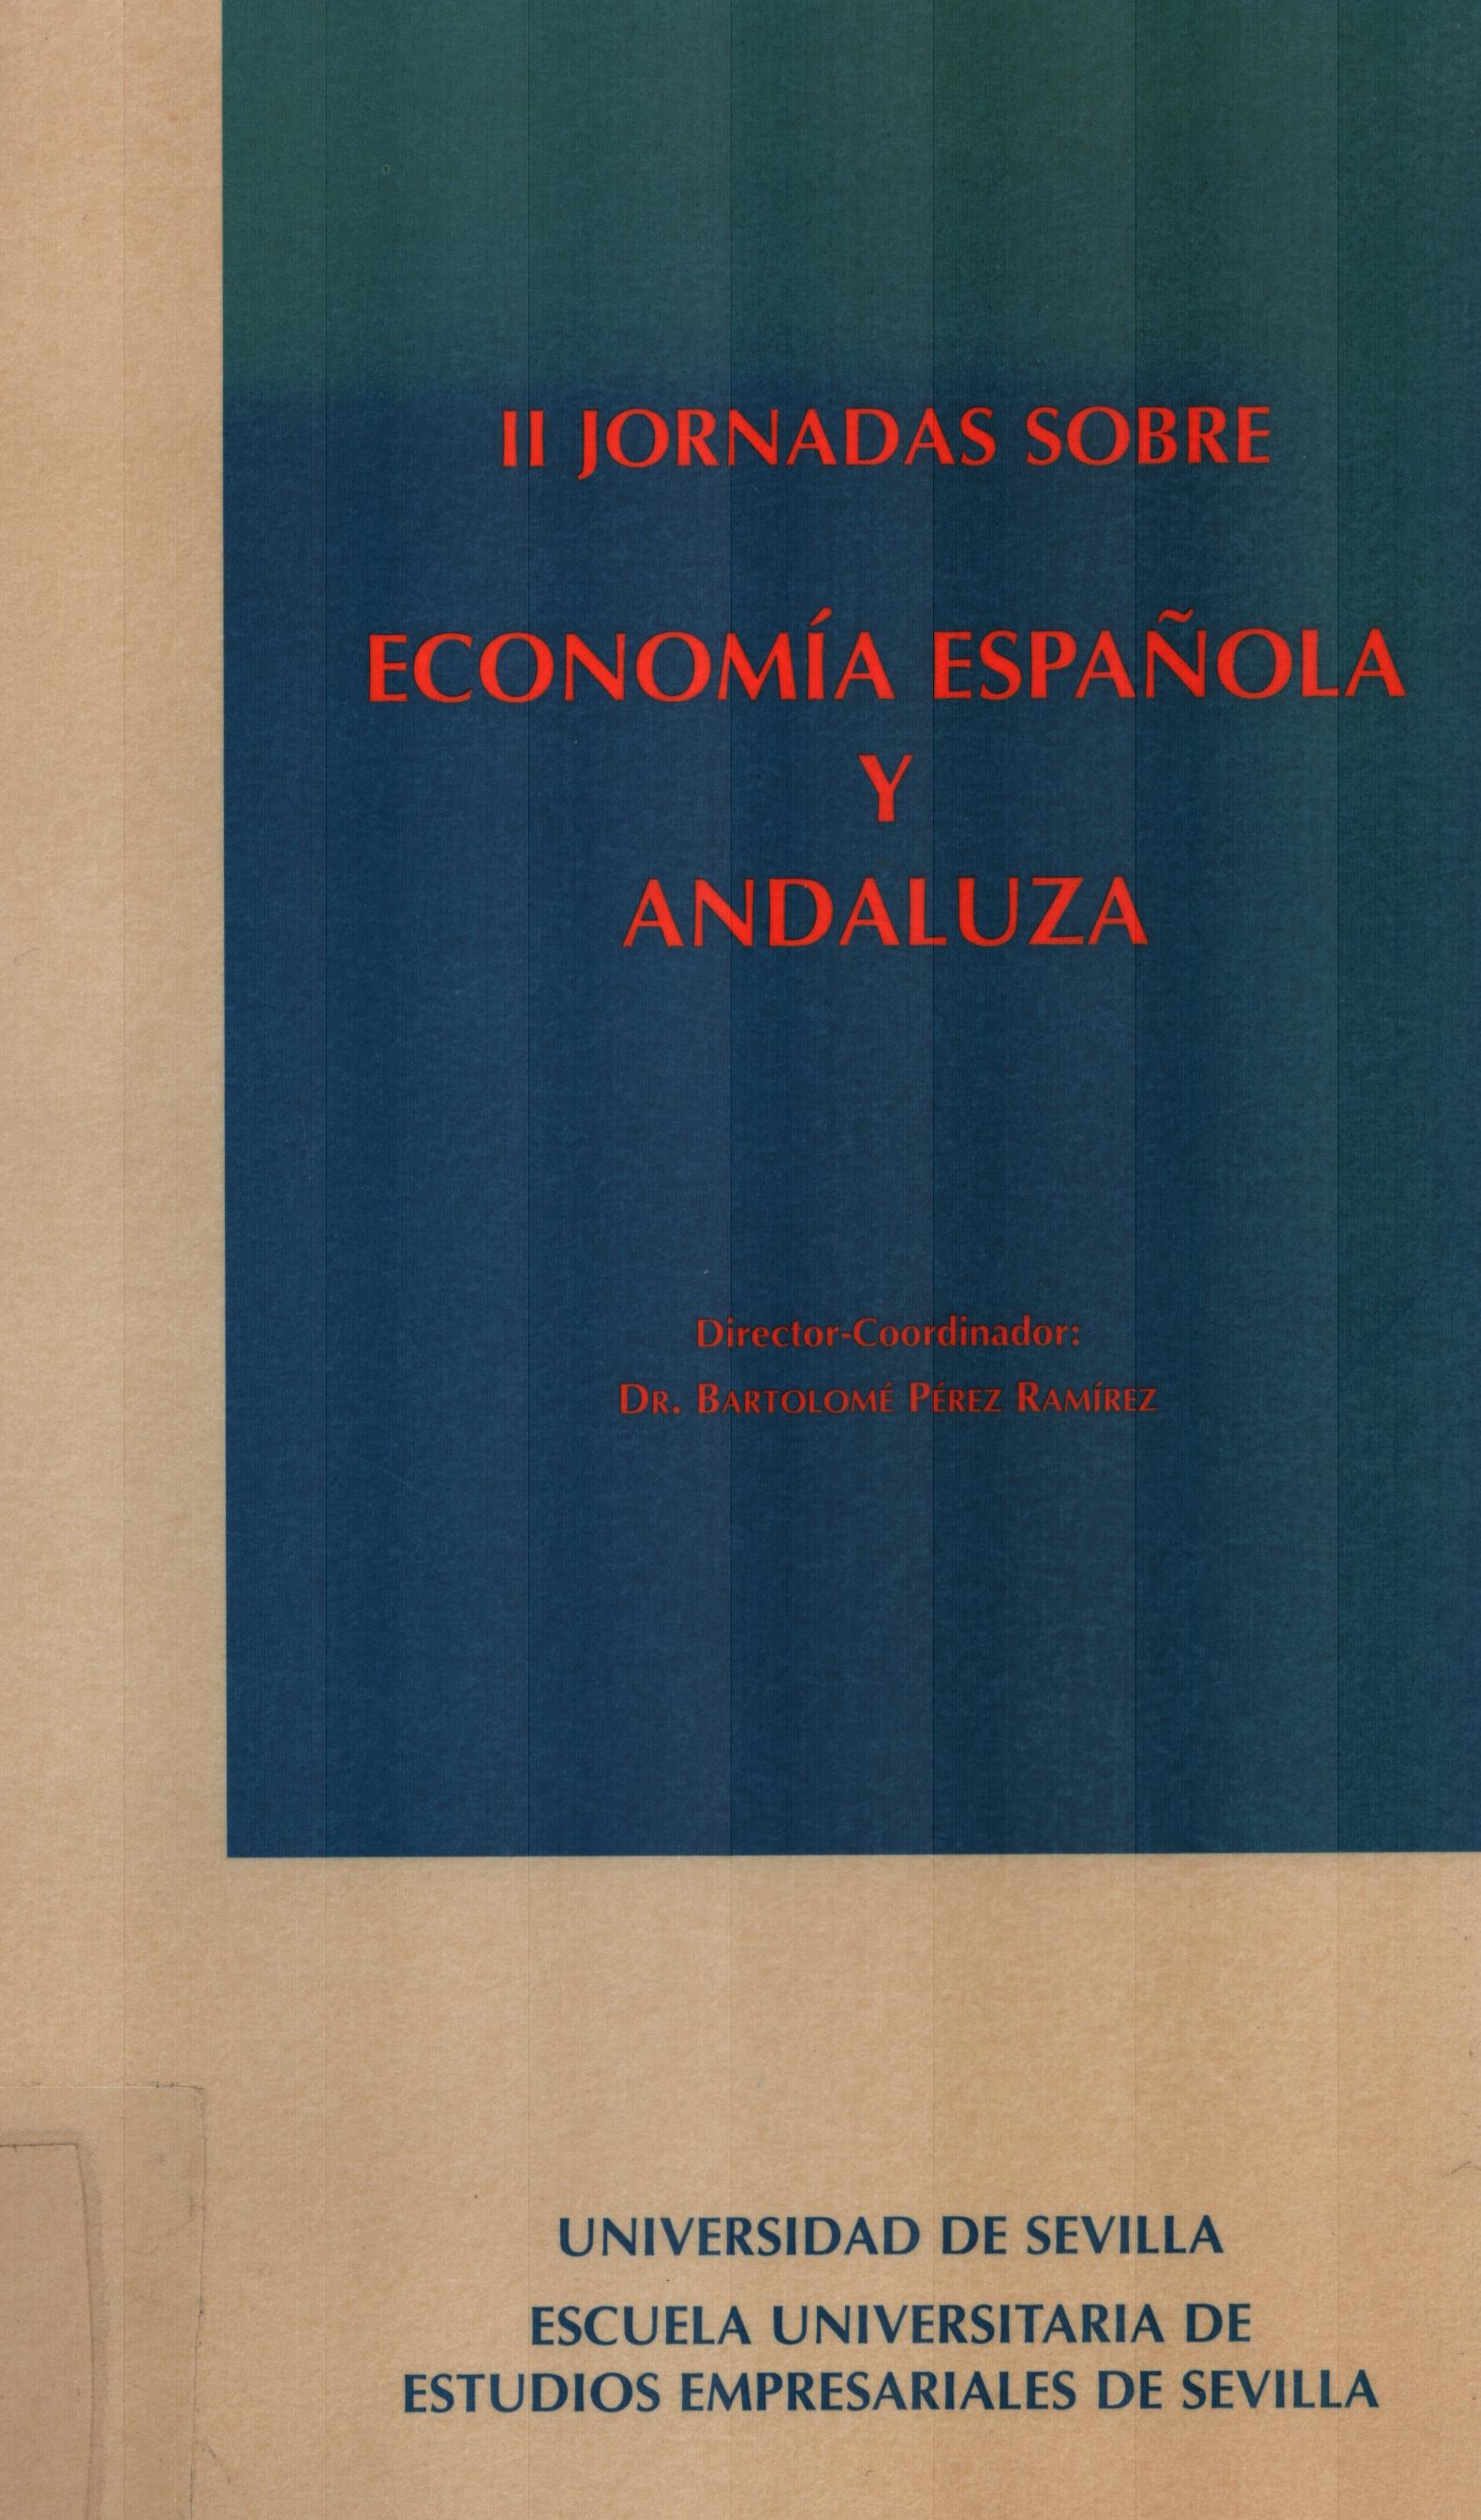 Imagen de portada del libro II Jornadas sobre Economía Española y Andaluza